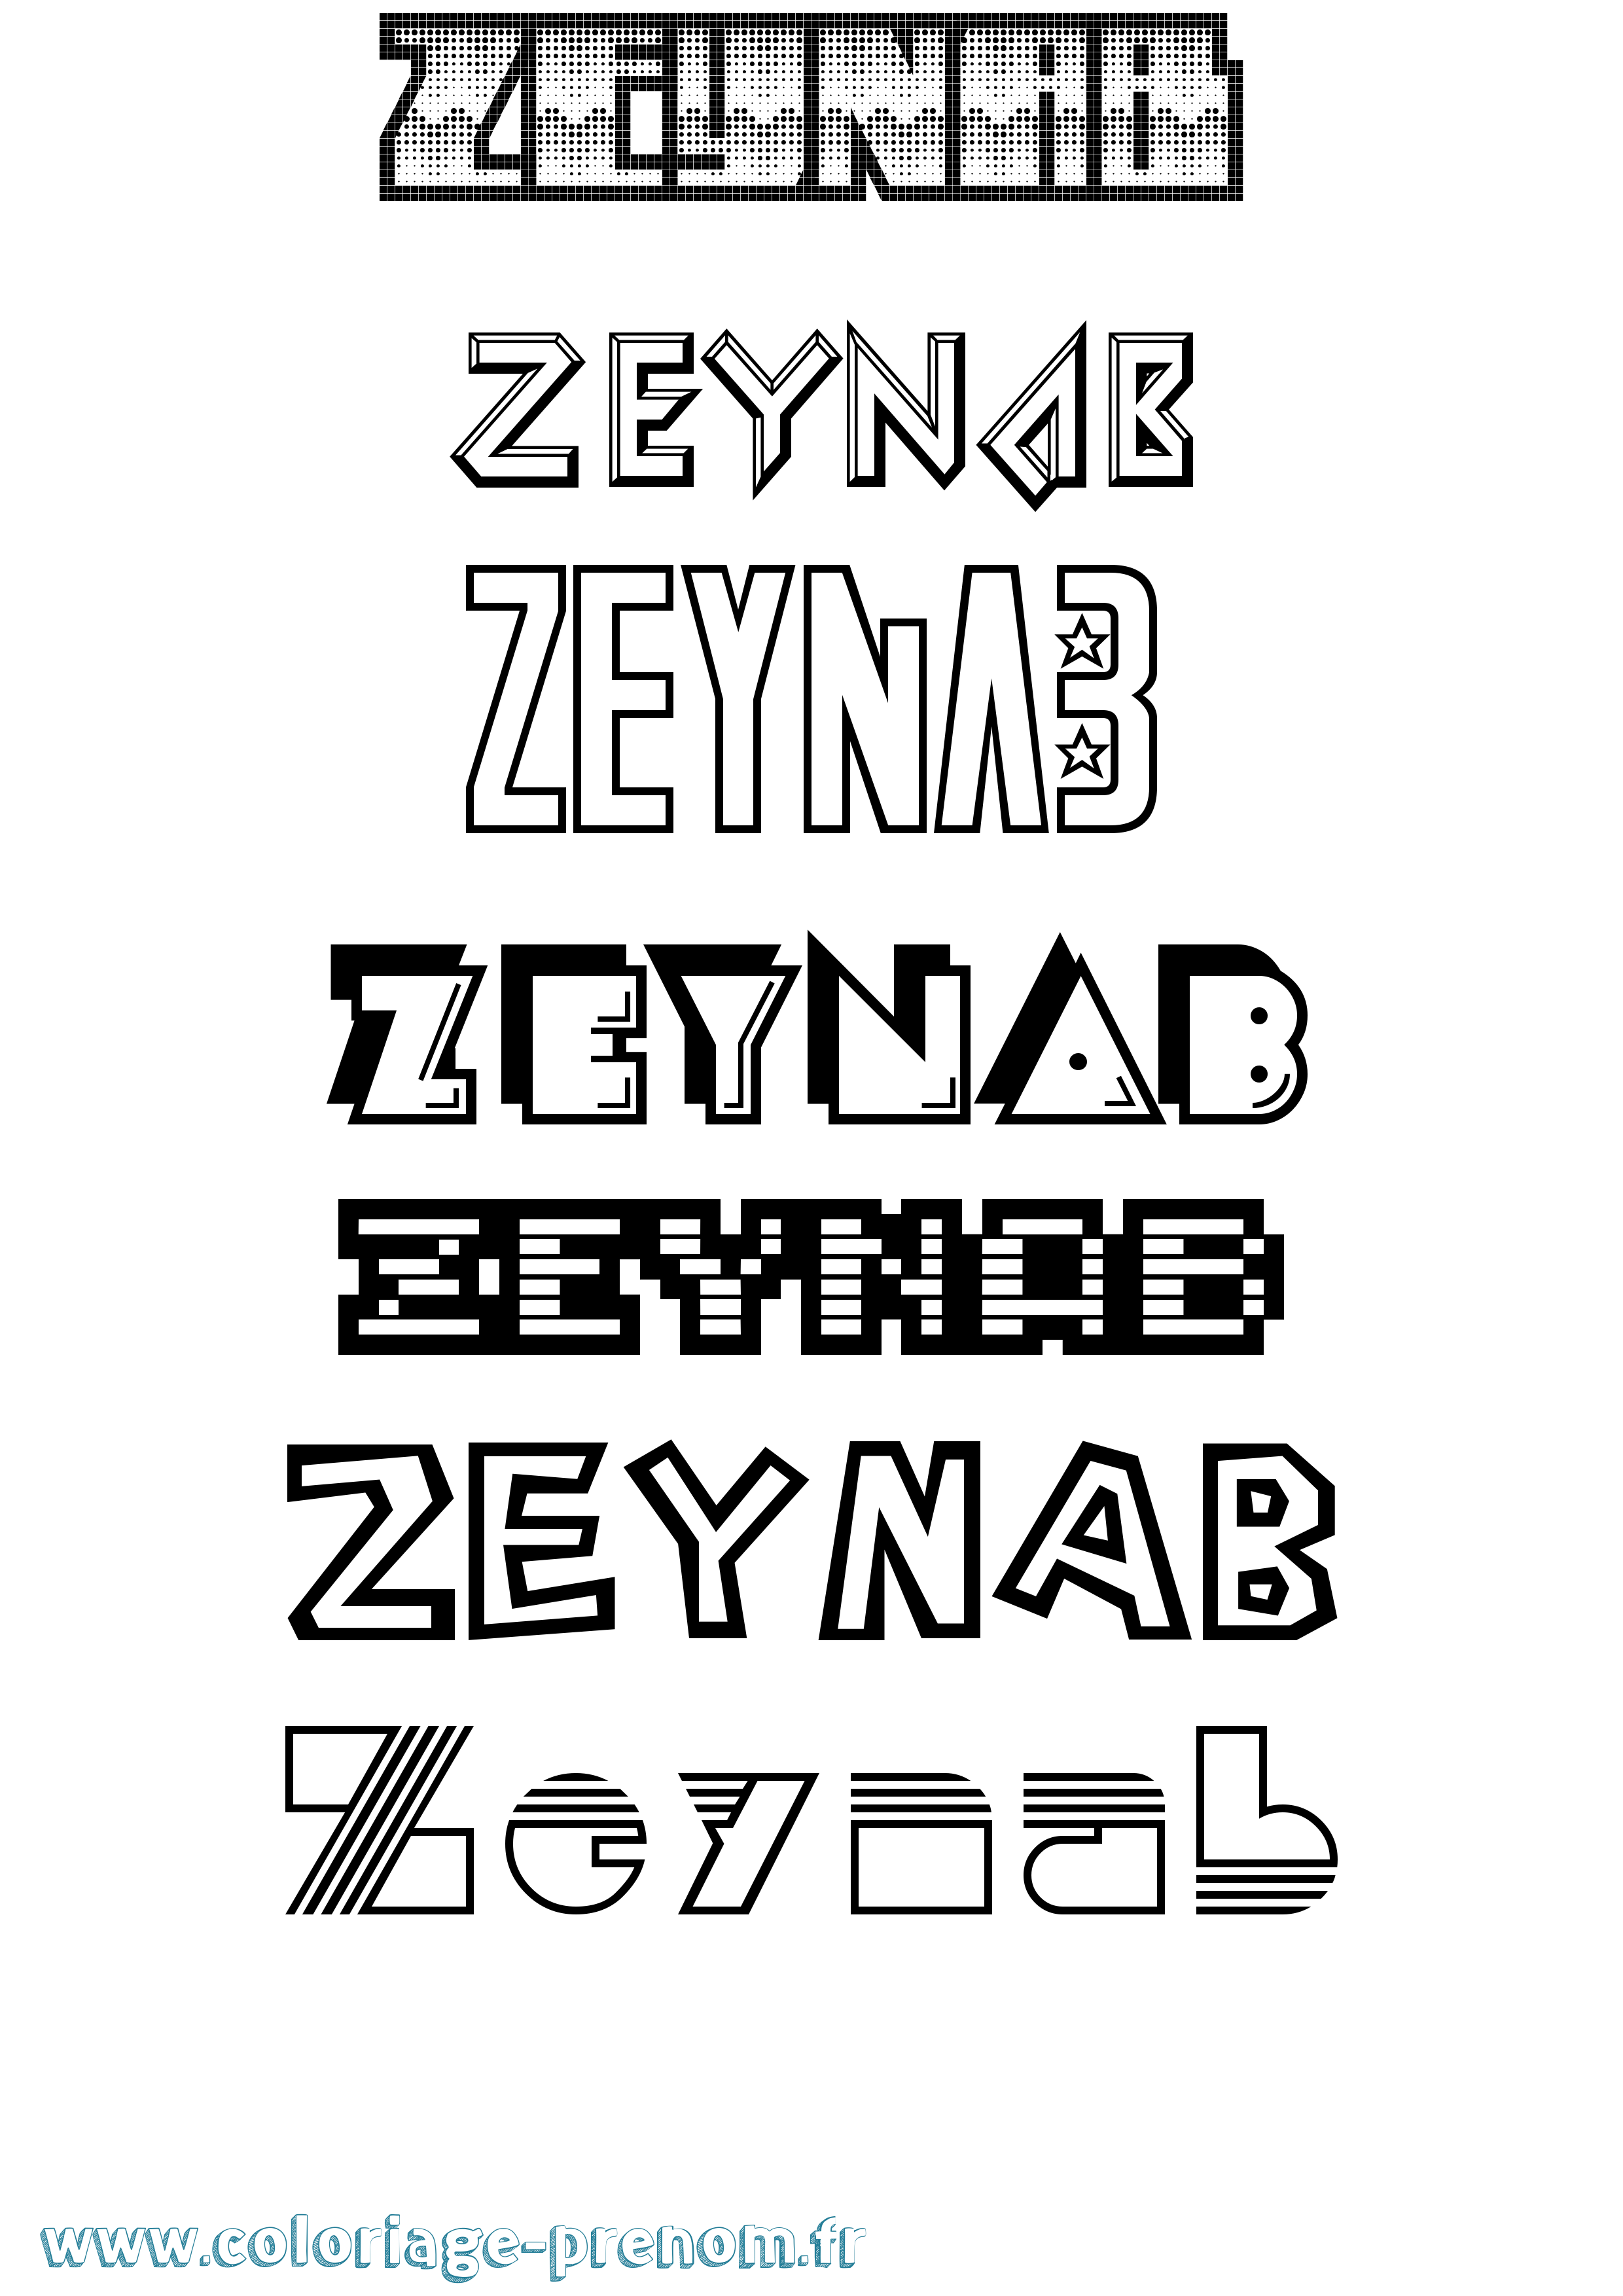 Coloriage prénom Zeynab